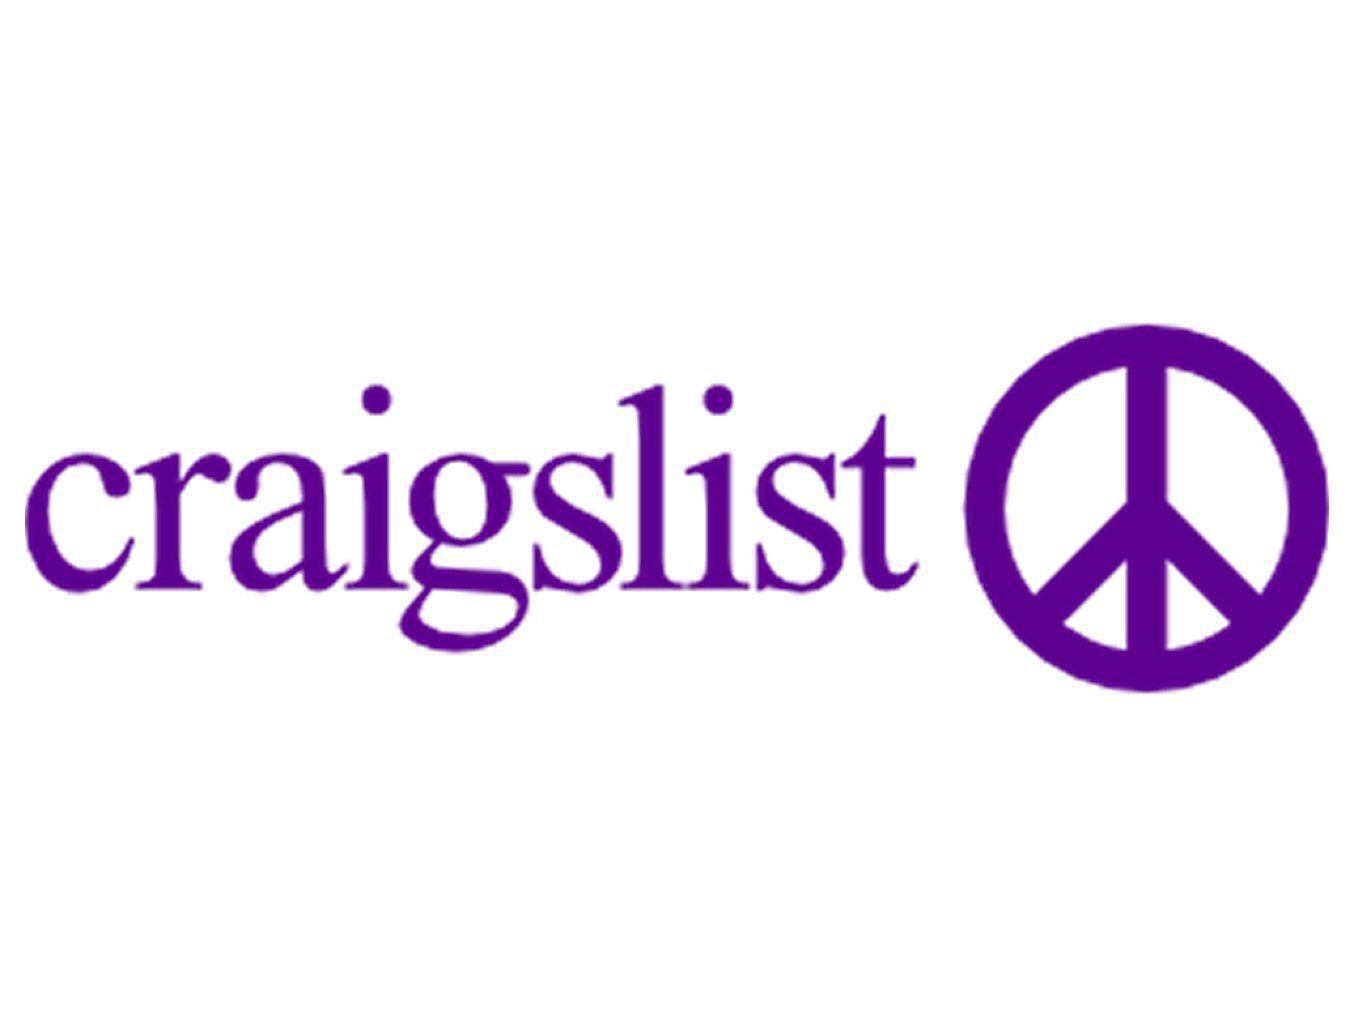 Craigslist Logo - Craigslist-logo - Global Dating Insights